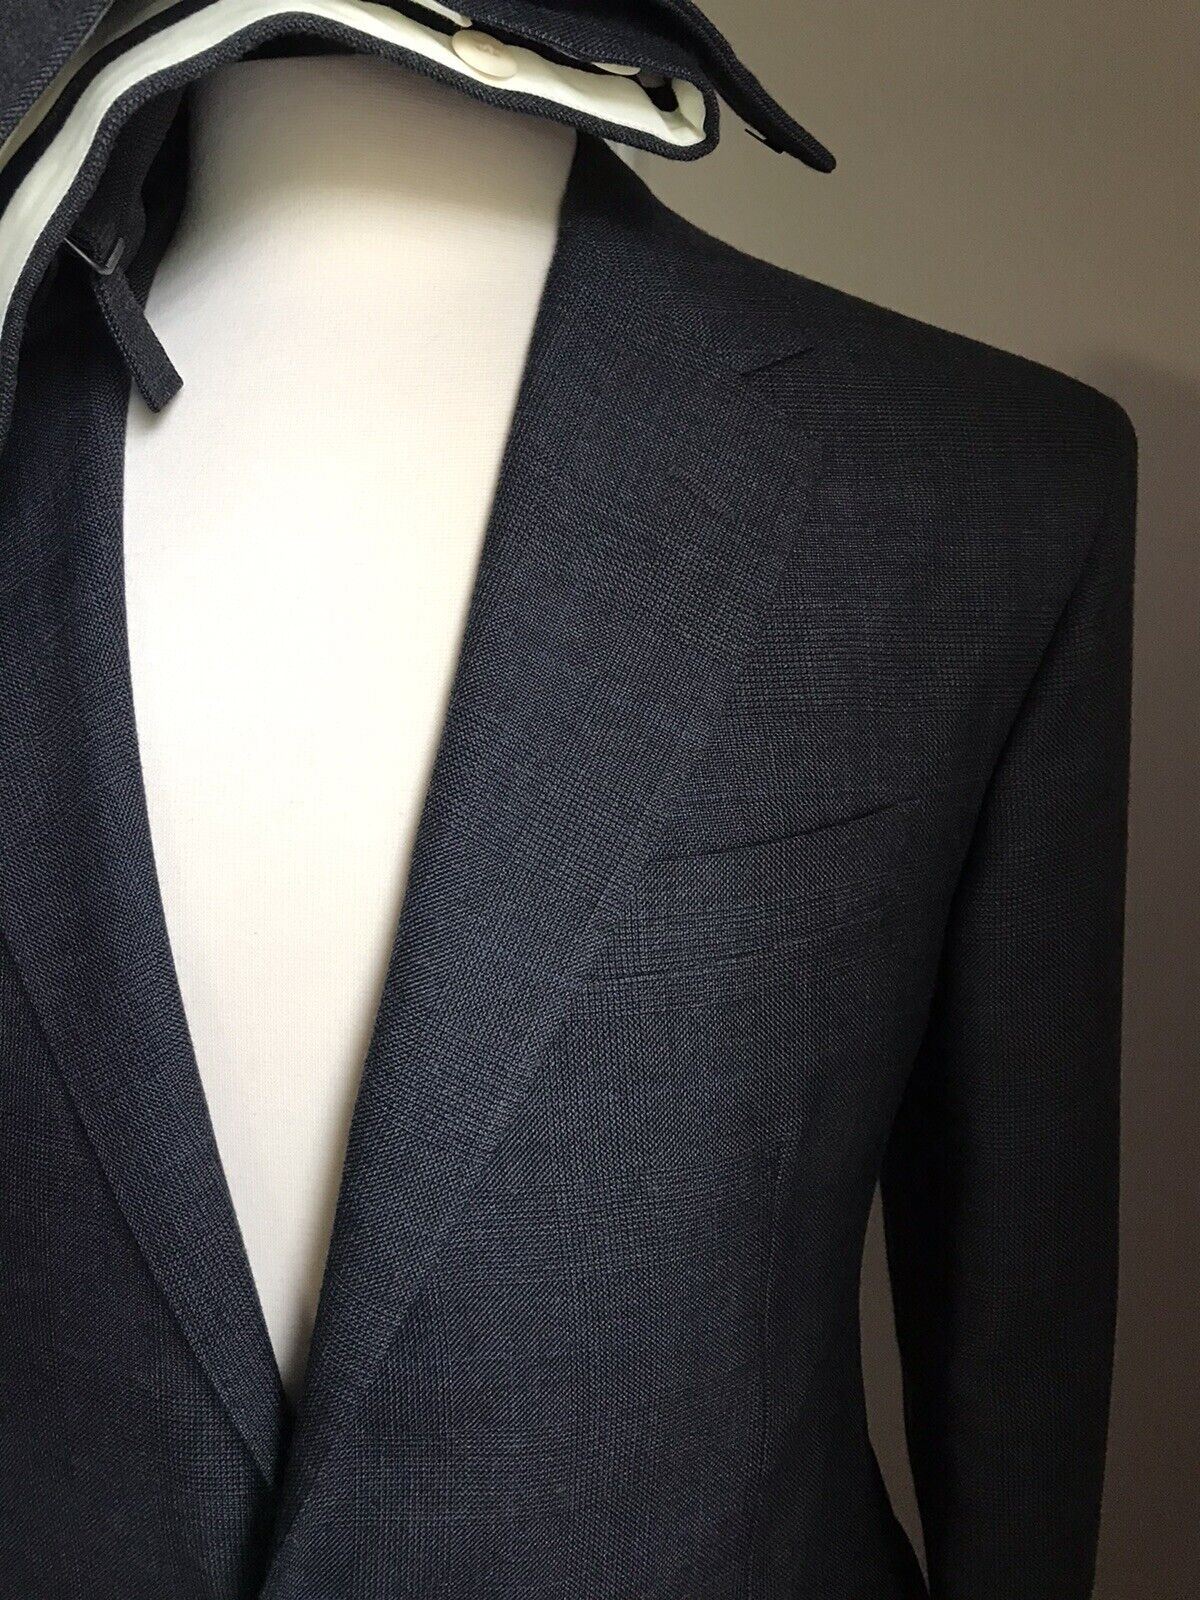 New $1598 Polo Ralph Lauren Men Suit Dark Gray 42R US/52R Eu Italy